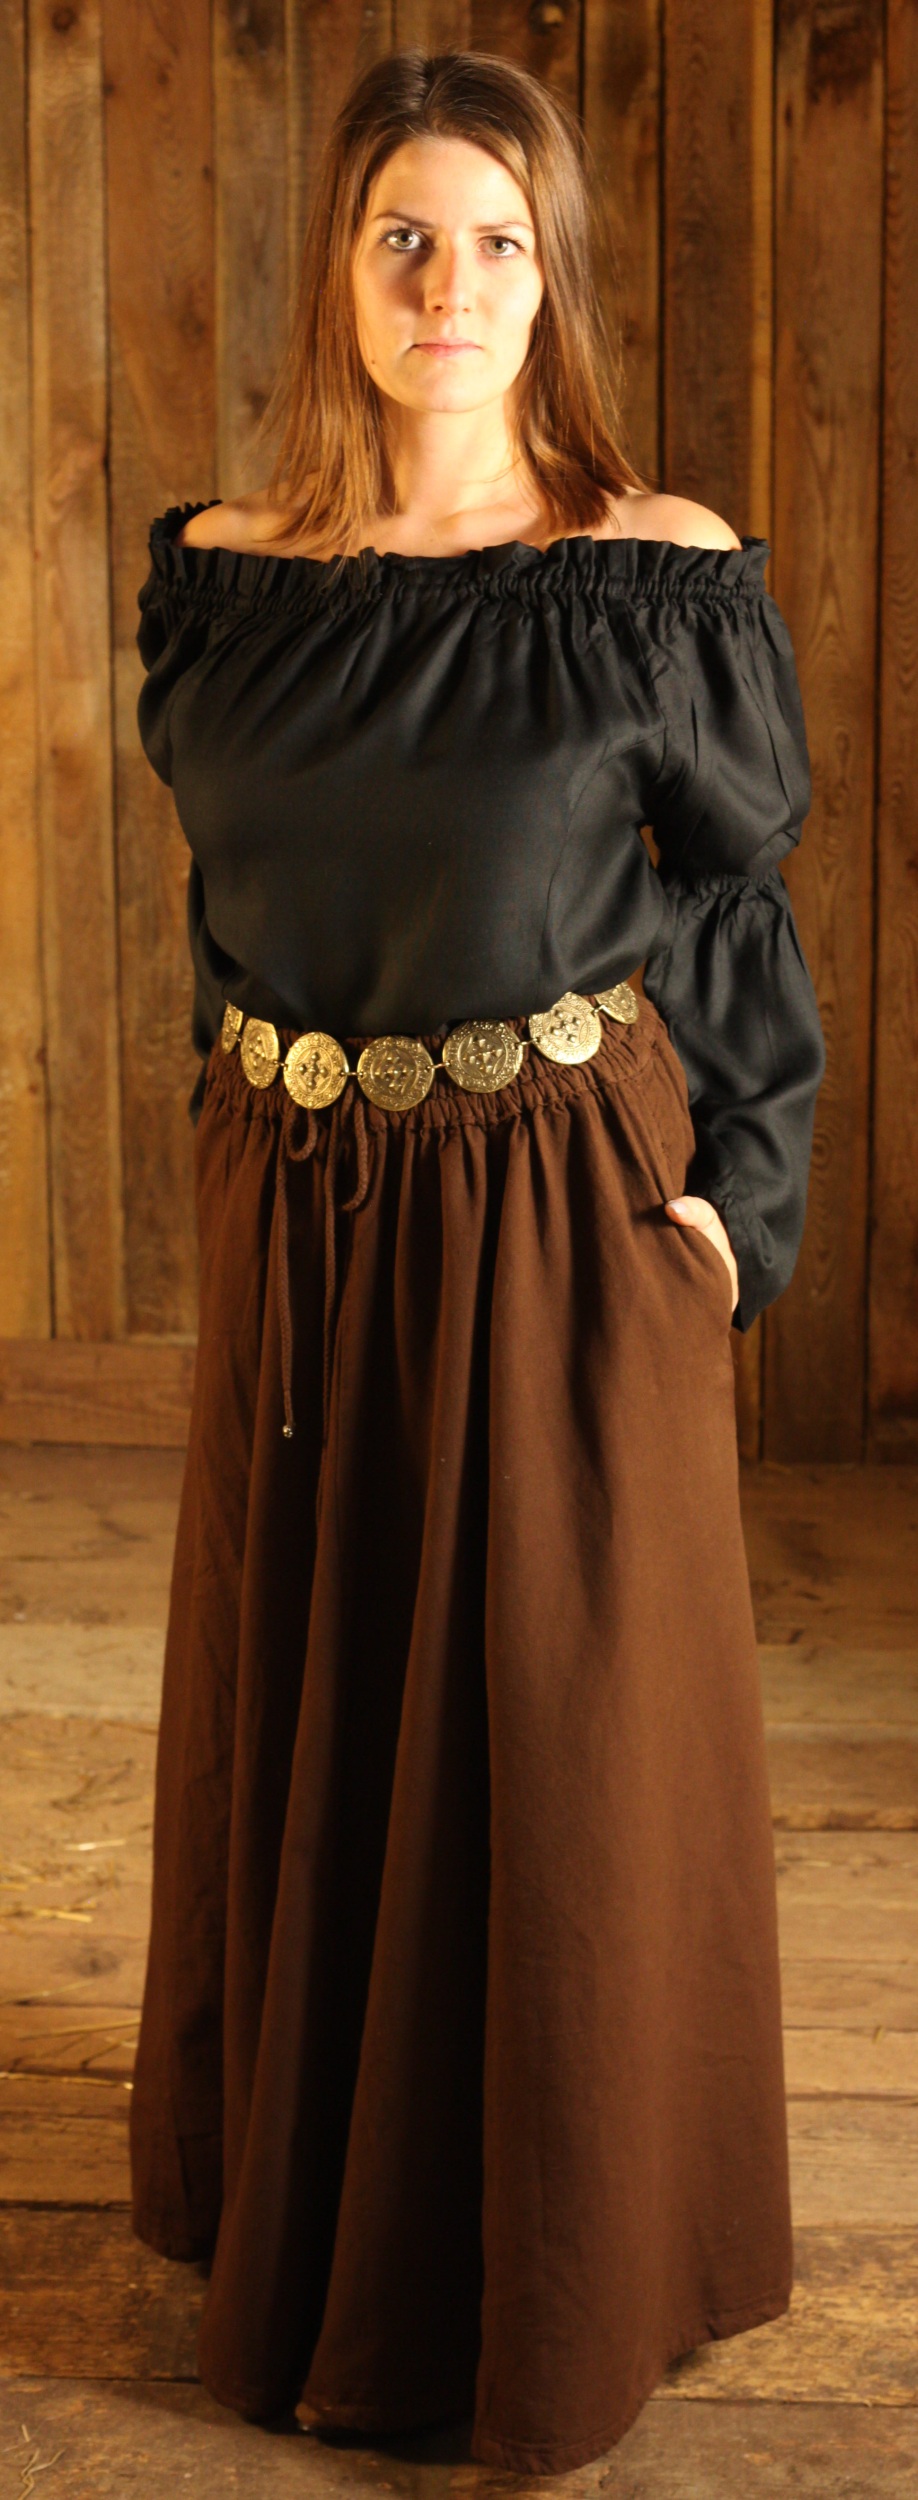 Wallende Mittelalter Röcke und stilvolle Gewandung